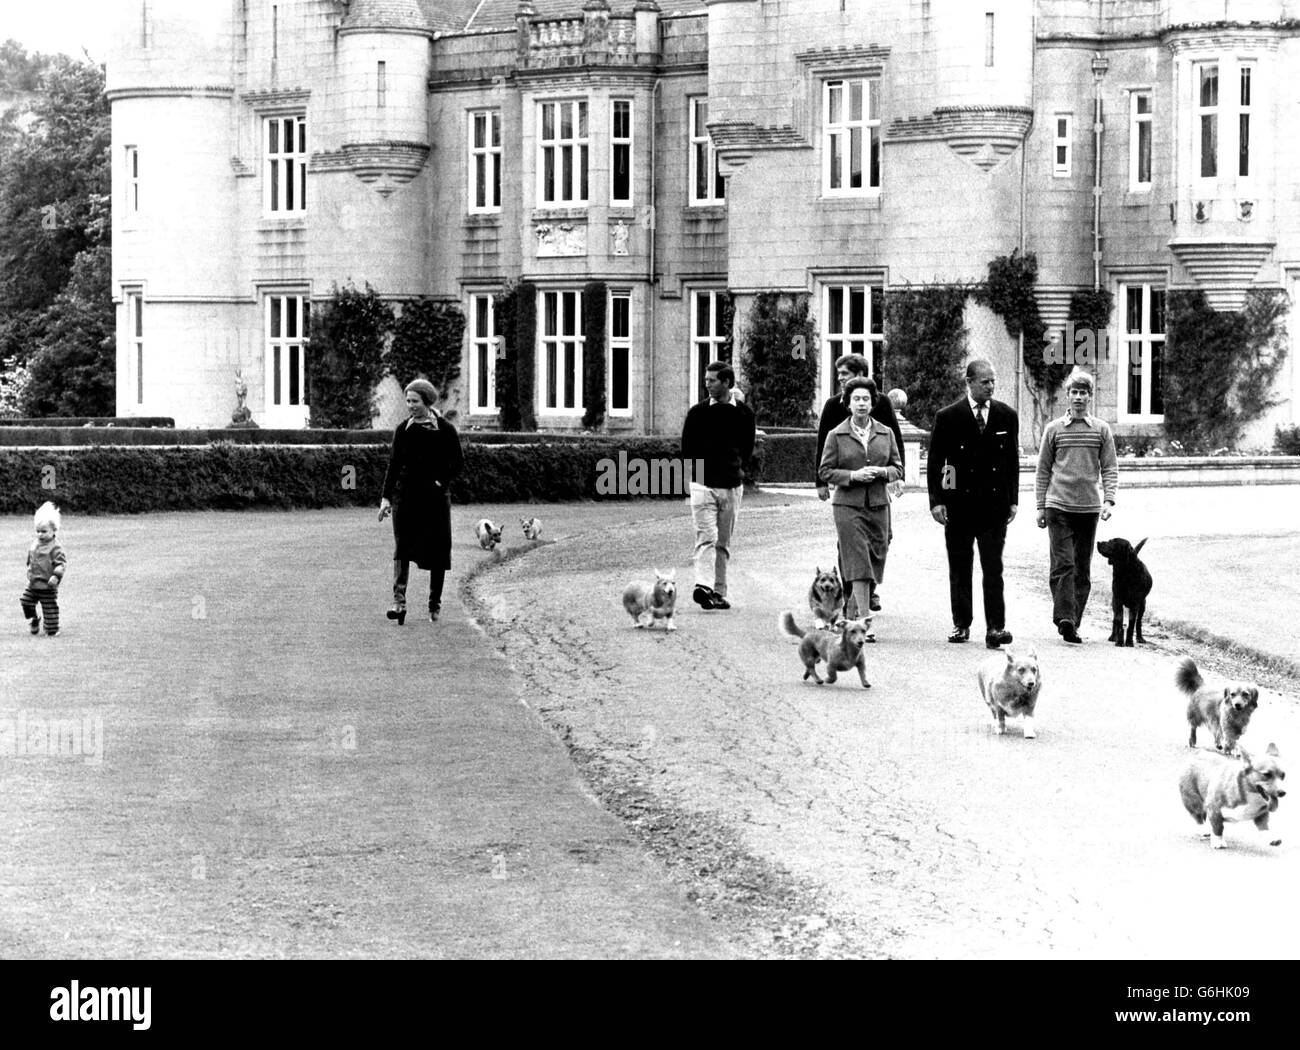 Die Queen und der Duke of Edinburgh feiern ihren 32. Hochzeitstag. Auf diesem Bild werden sie mit ihren Kindern und Enkelkindern in ihrem schottischen Zuhause, Balmoral Castle, gezeigt. (Von links nach rechts), Meister Peter Phillips, seine Mutter, Prinzessin Anne, der Prinz von Wales, Prinz Andrew und Prinz Edward (rechts). Stockfoto